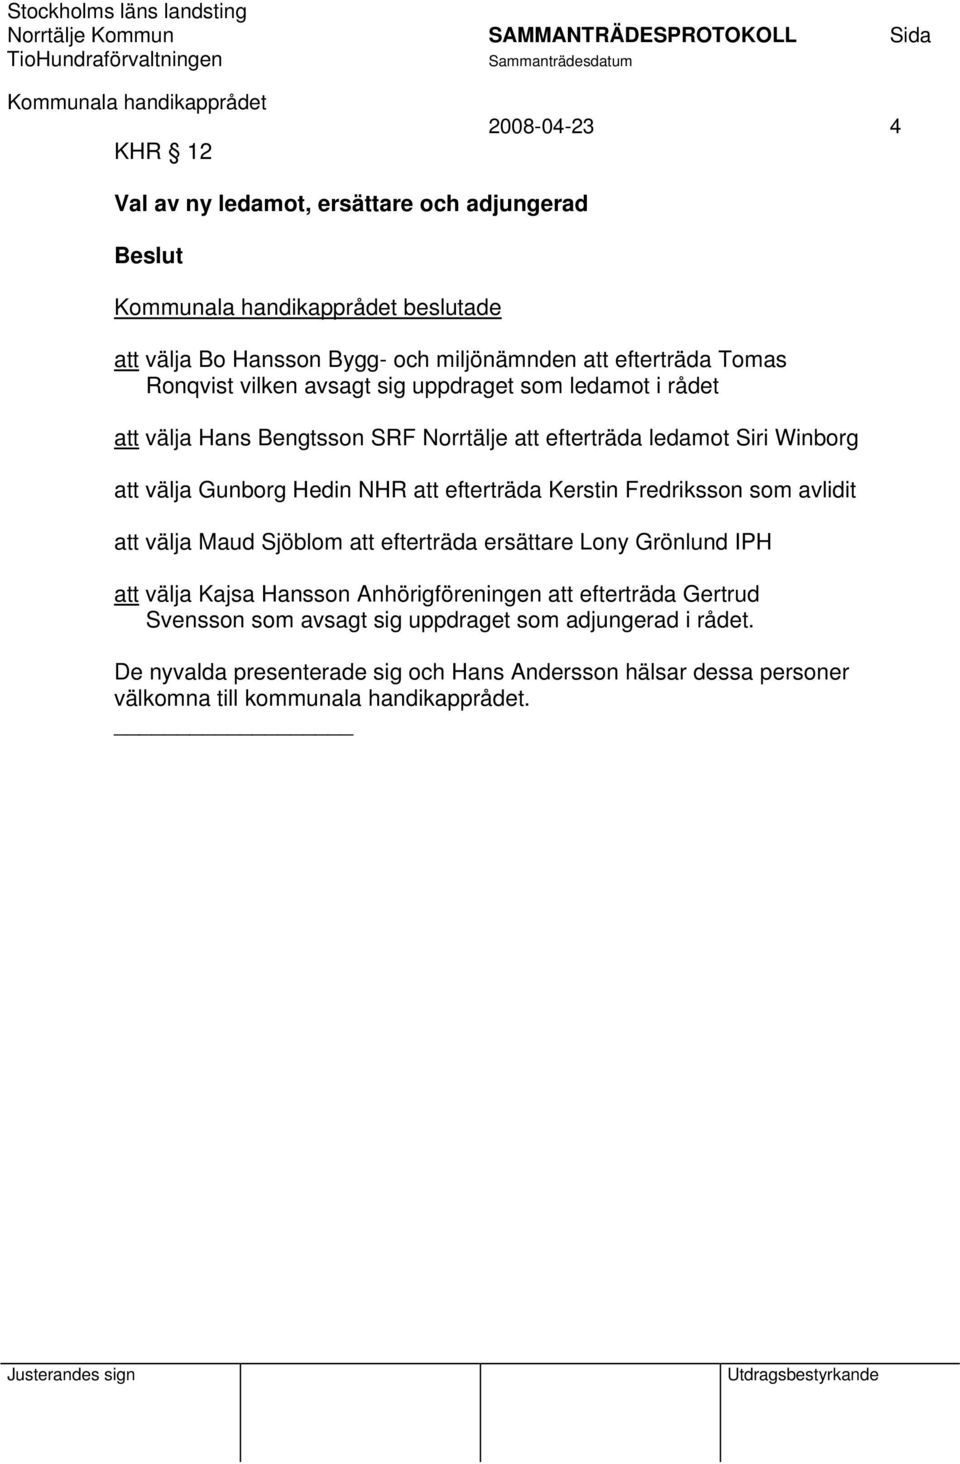 Kerstin Fredriksson som avlidit att välja Maud Sjöblom att efterträda ersättare Lony Grönlund IPH att välja Kajsa Hansson Anhörigföreningen att efterträda Gertrud